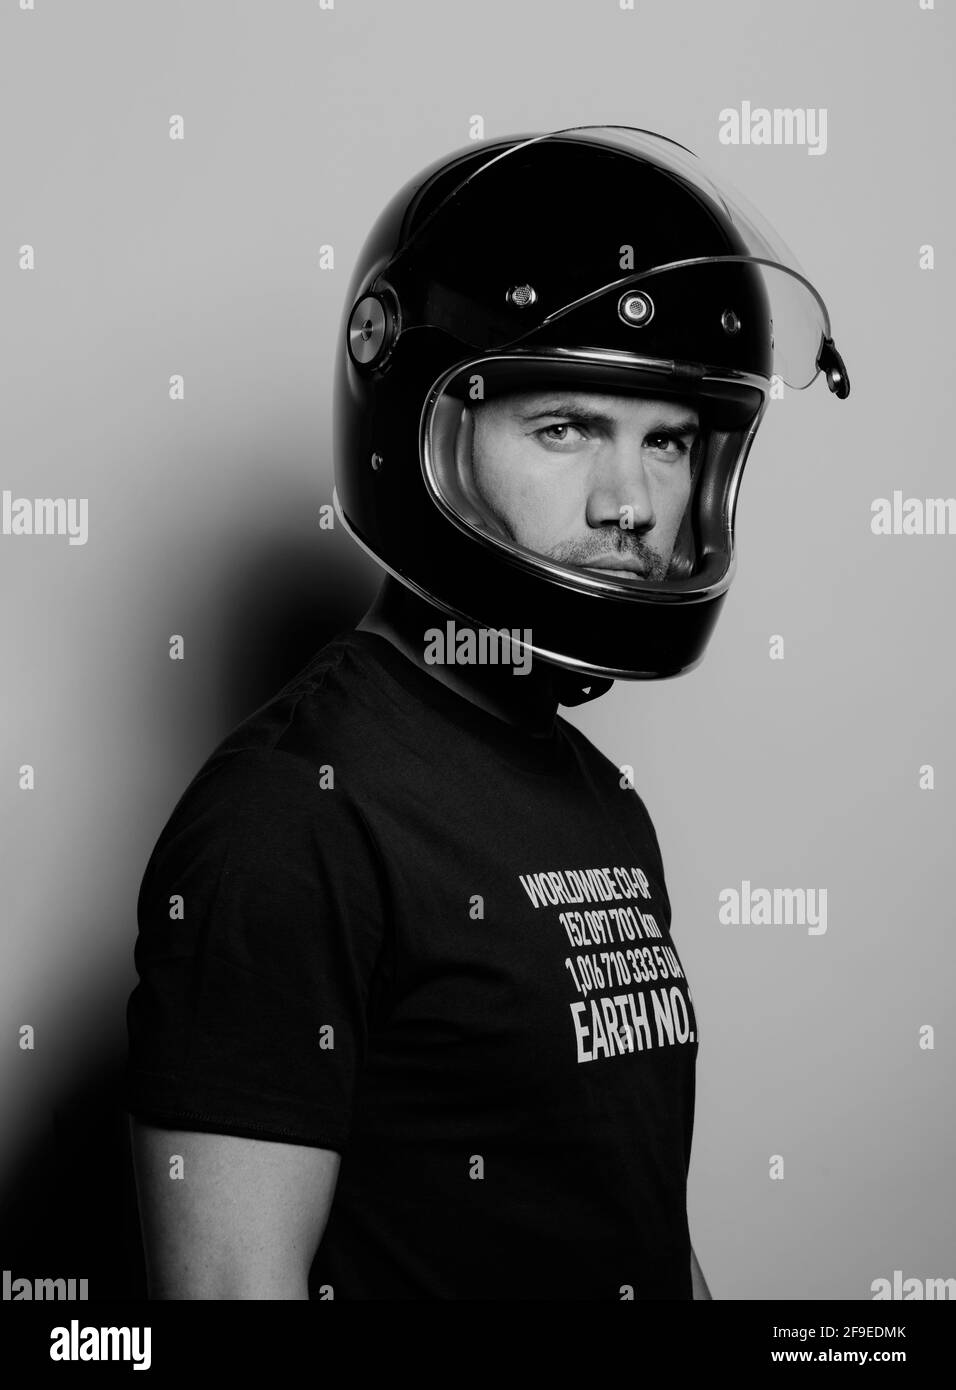 Seitenansicht eines selbstbewussten, brutalen erwachsenen Mannes in einem schwarzen Motorrad Der Helm blickt auf die Kamera, während er vor dem Hintergrund des Studios steht Stockfoto